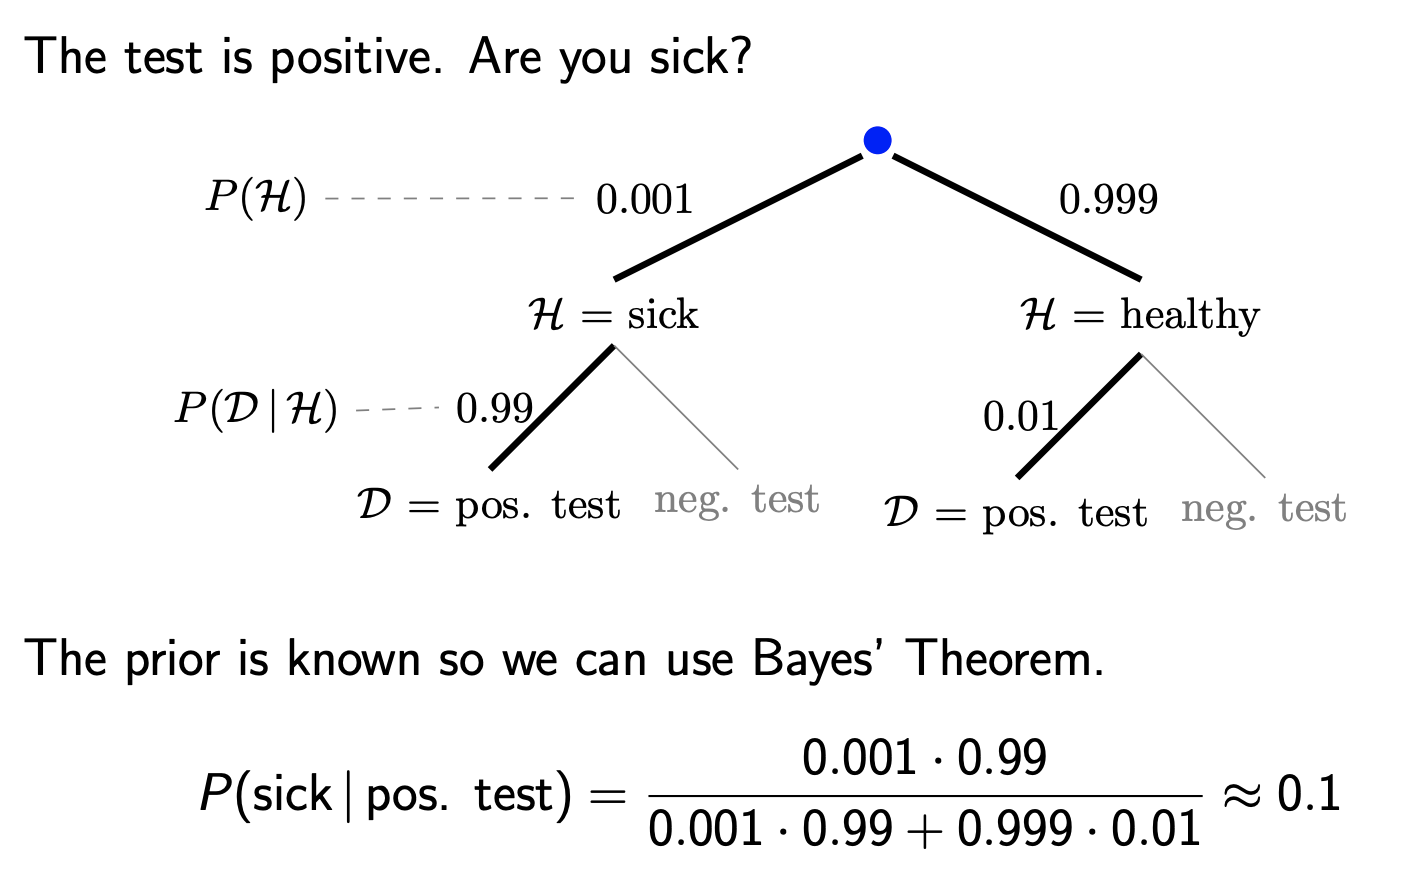 Source: http://www-math.mit.edu/~dav/05.dir/class17-slides-all.pdf